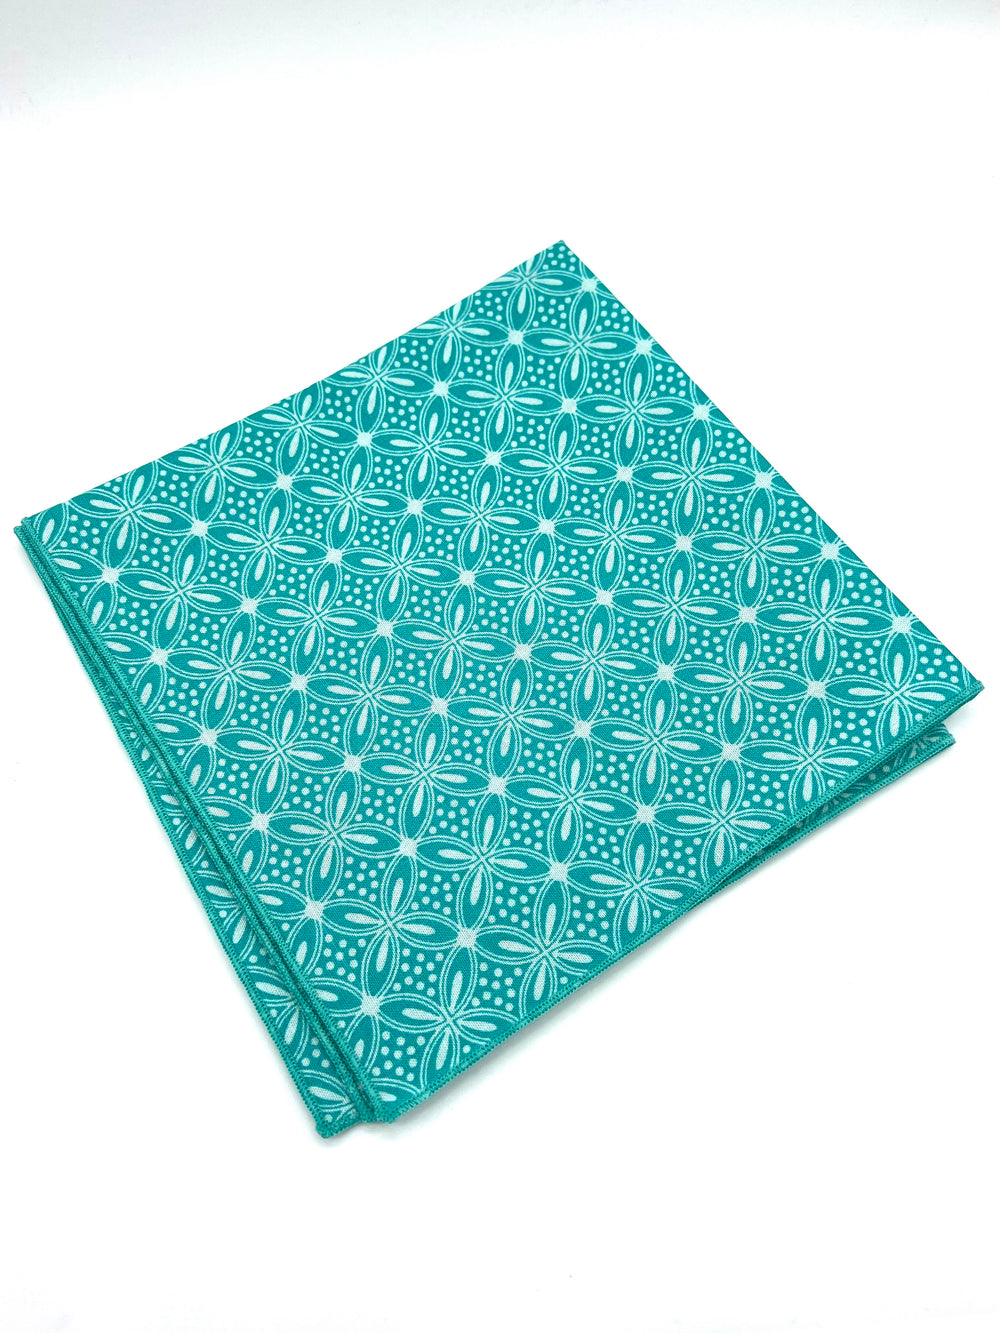 The Dell Handkerchief